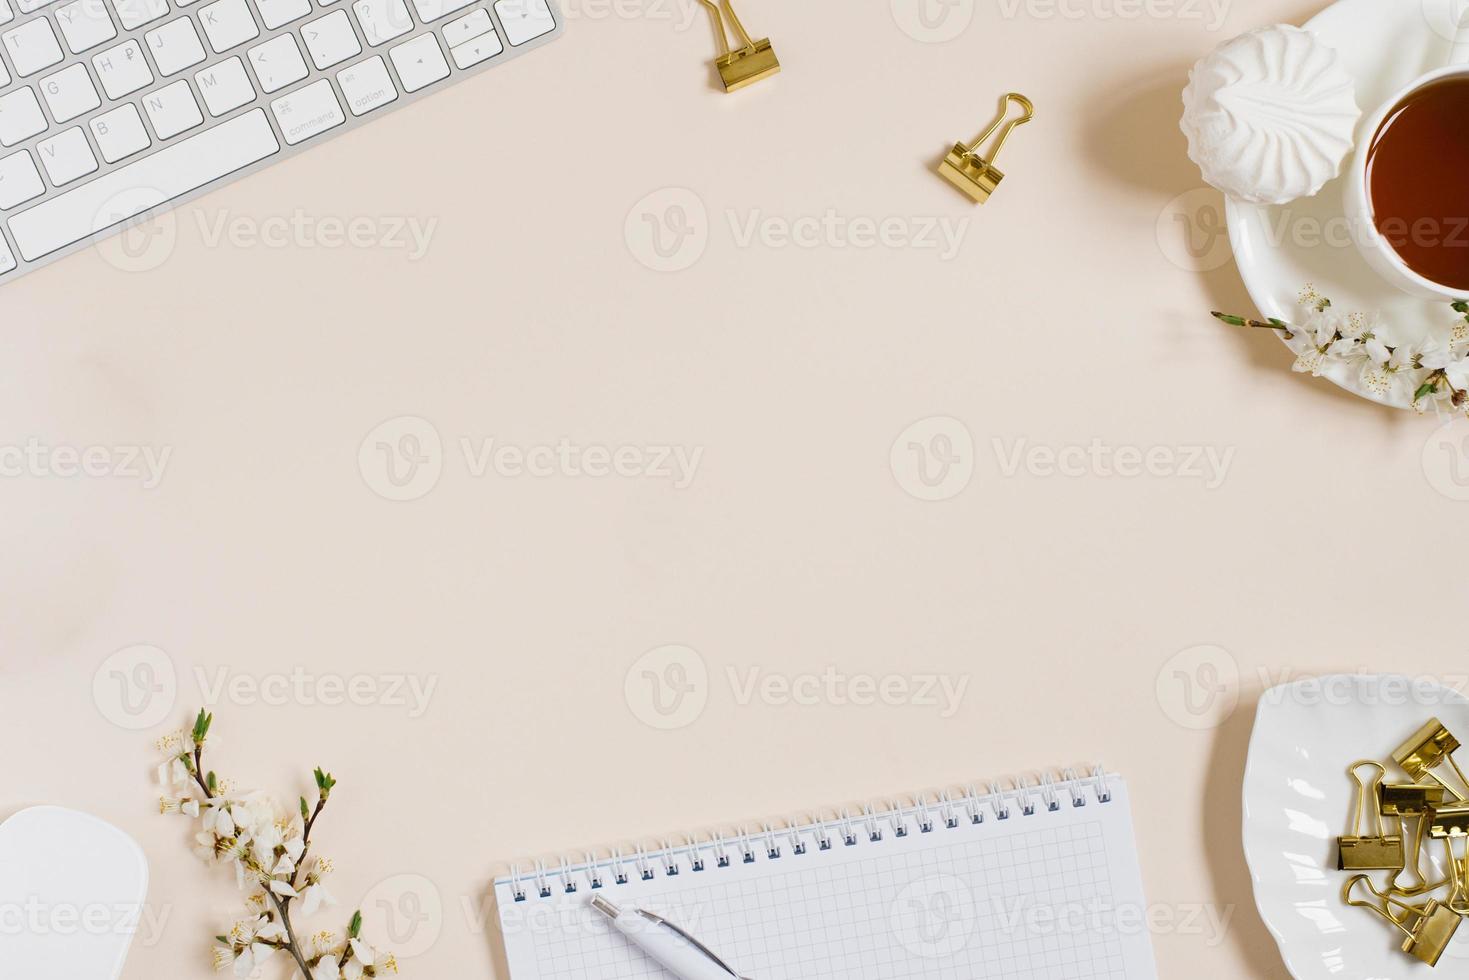 espaço de trabalho do blogueiro de beleza de moda com teclado de laptop, flores de maçã, xícara de chá, marshmallow em fundo bege. configuração plana, vista superior, espaço de cópia foto